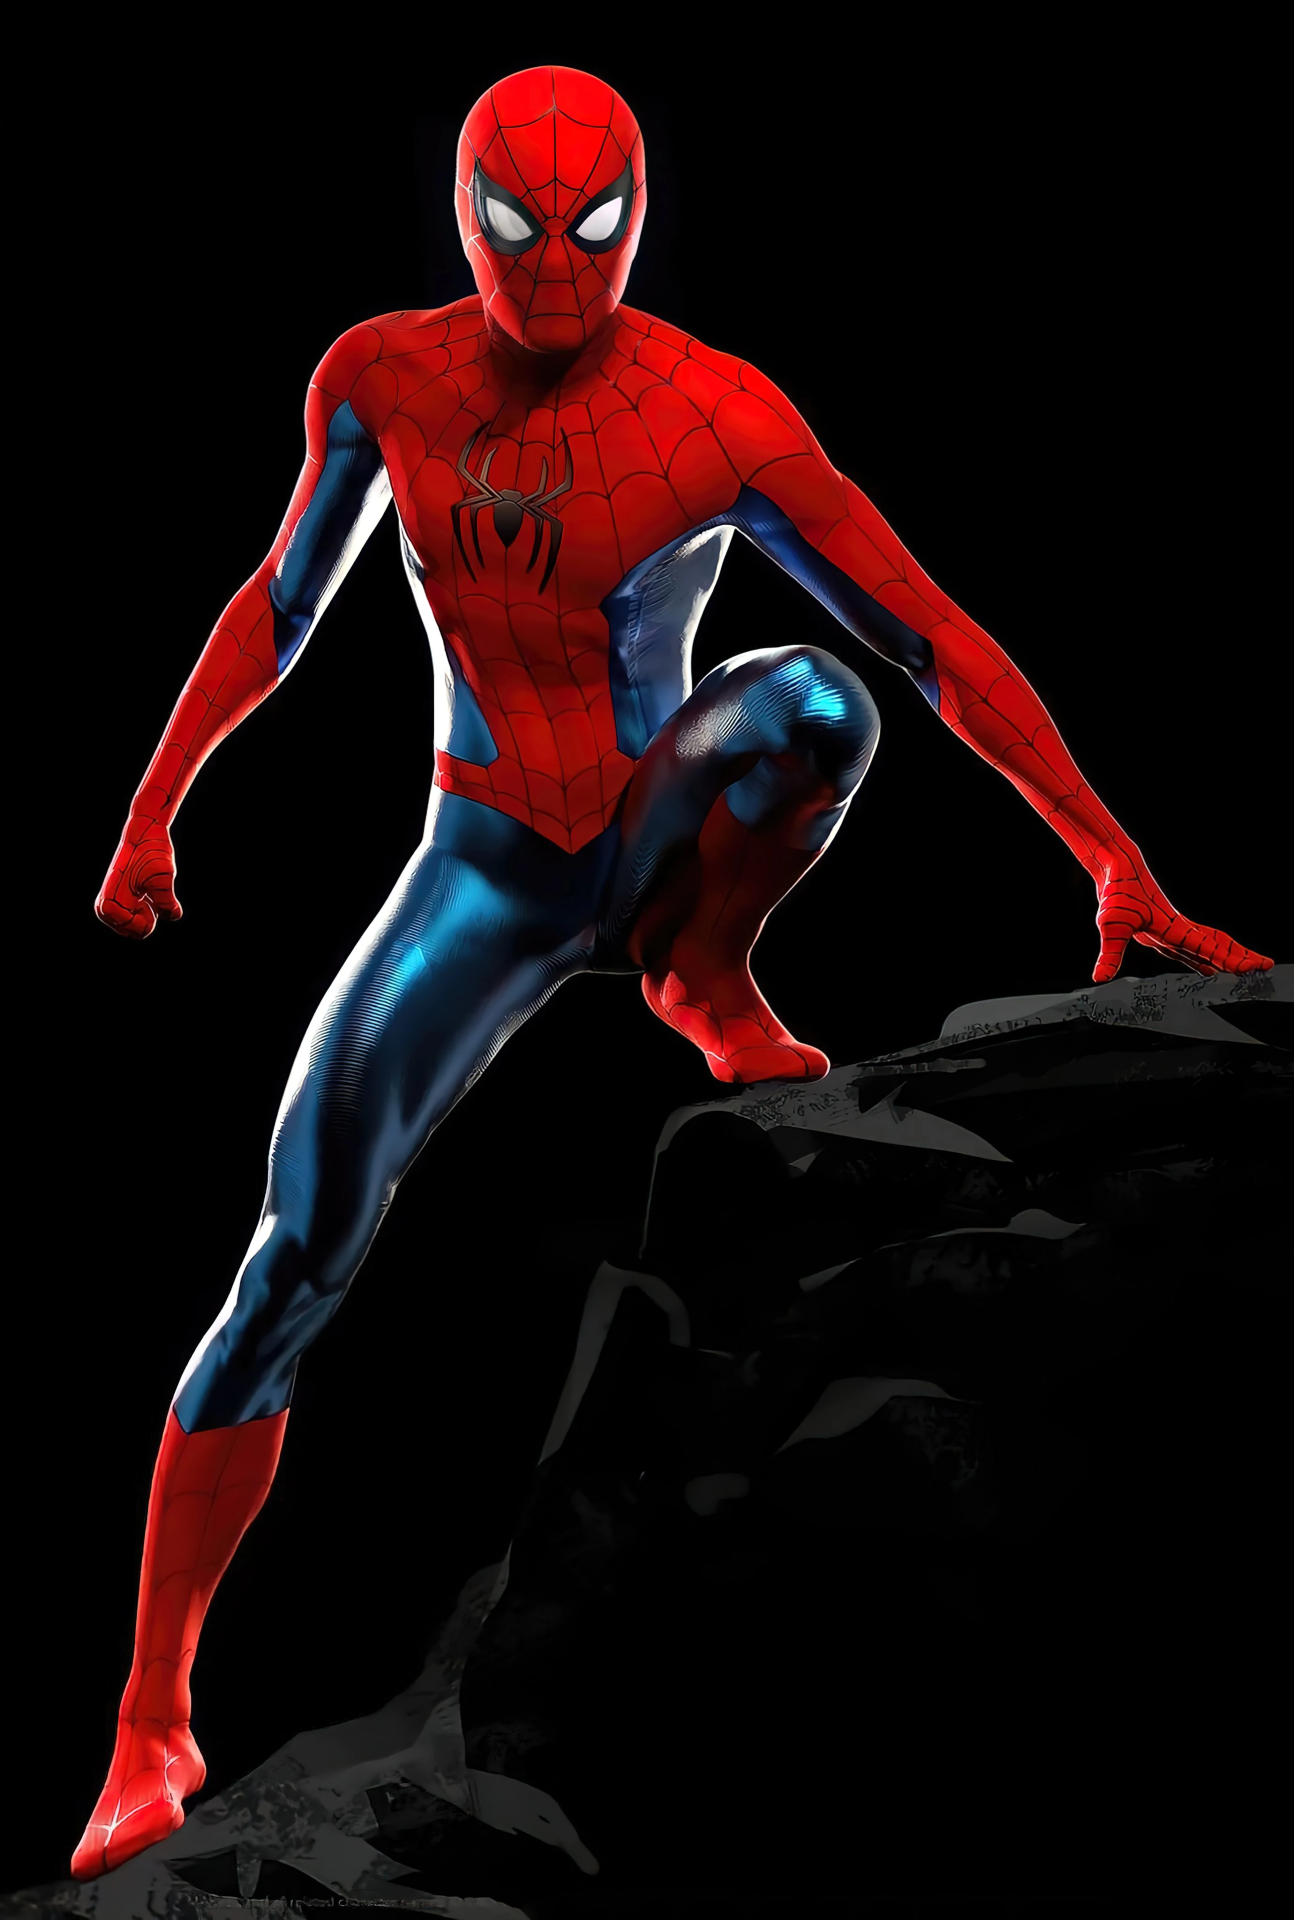 Equipo Buena voluntad Reposición Traje del Hombre Araña | Marvel Cinematic Universe Wiki | Fandom